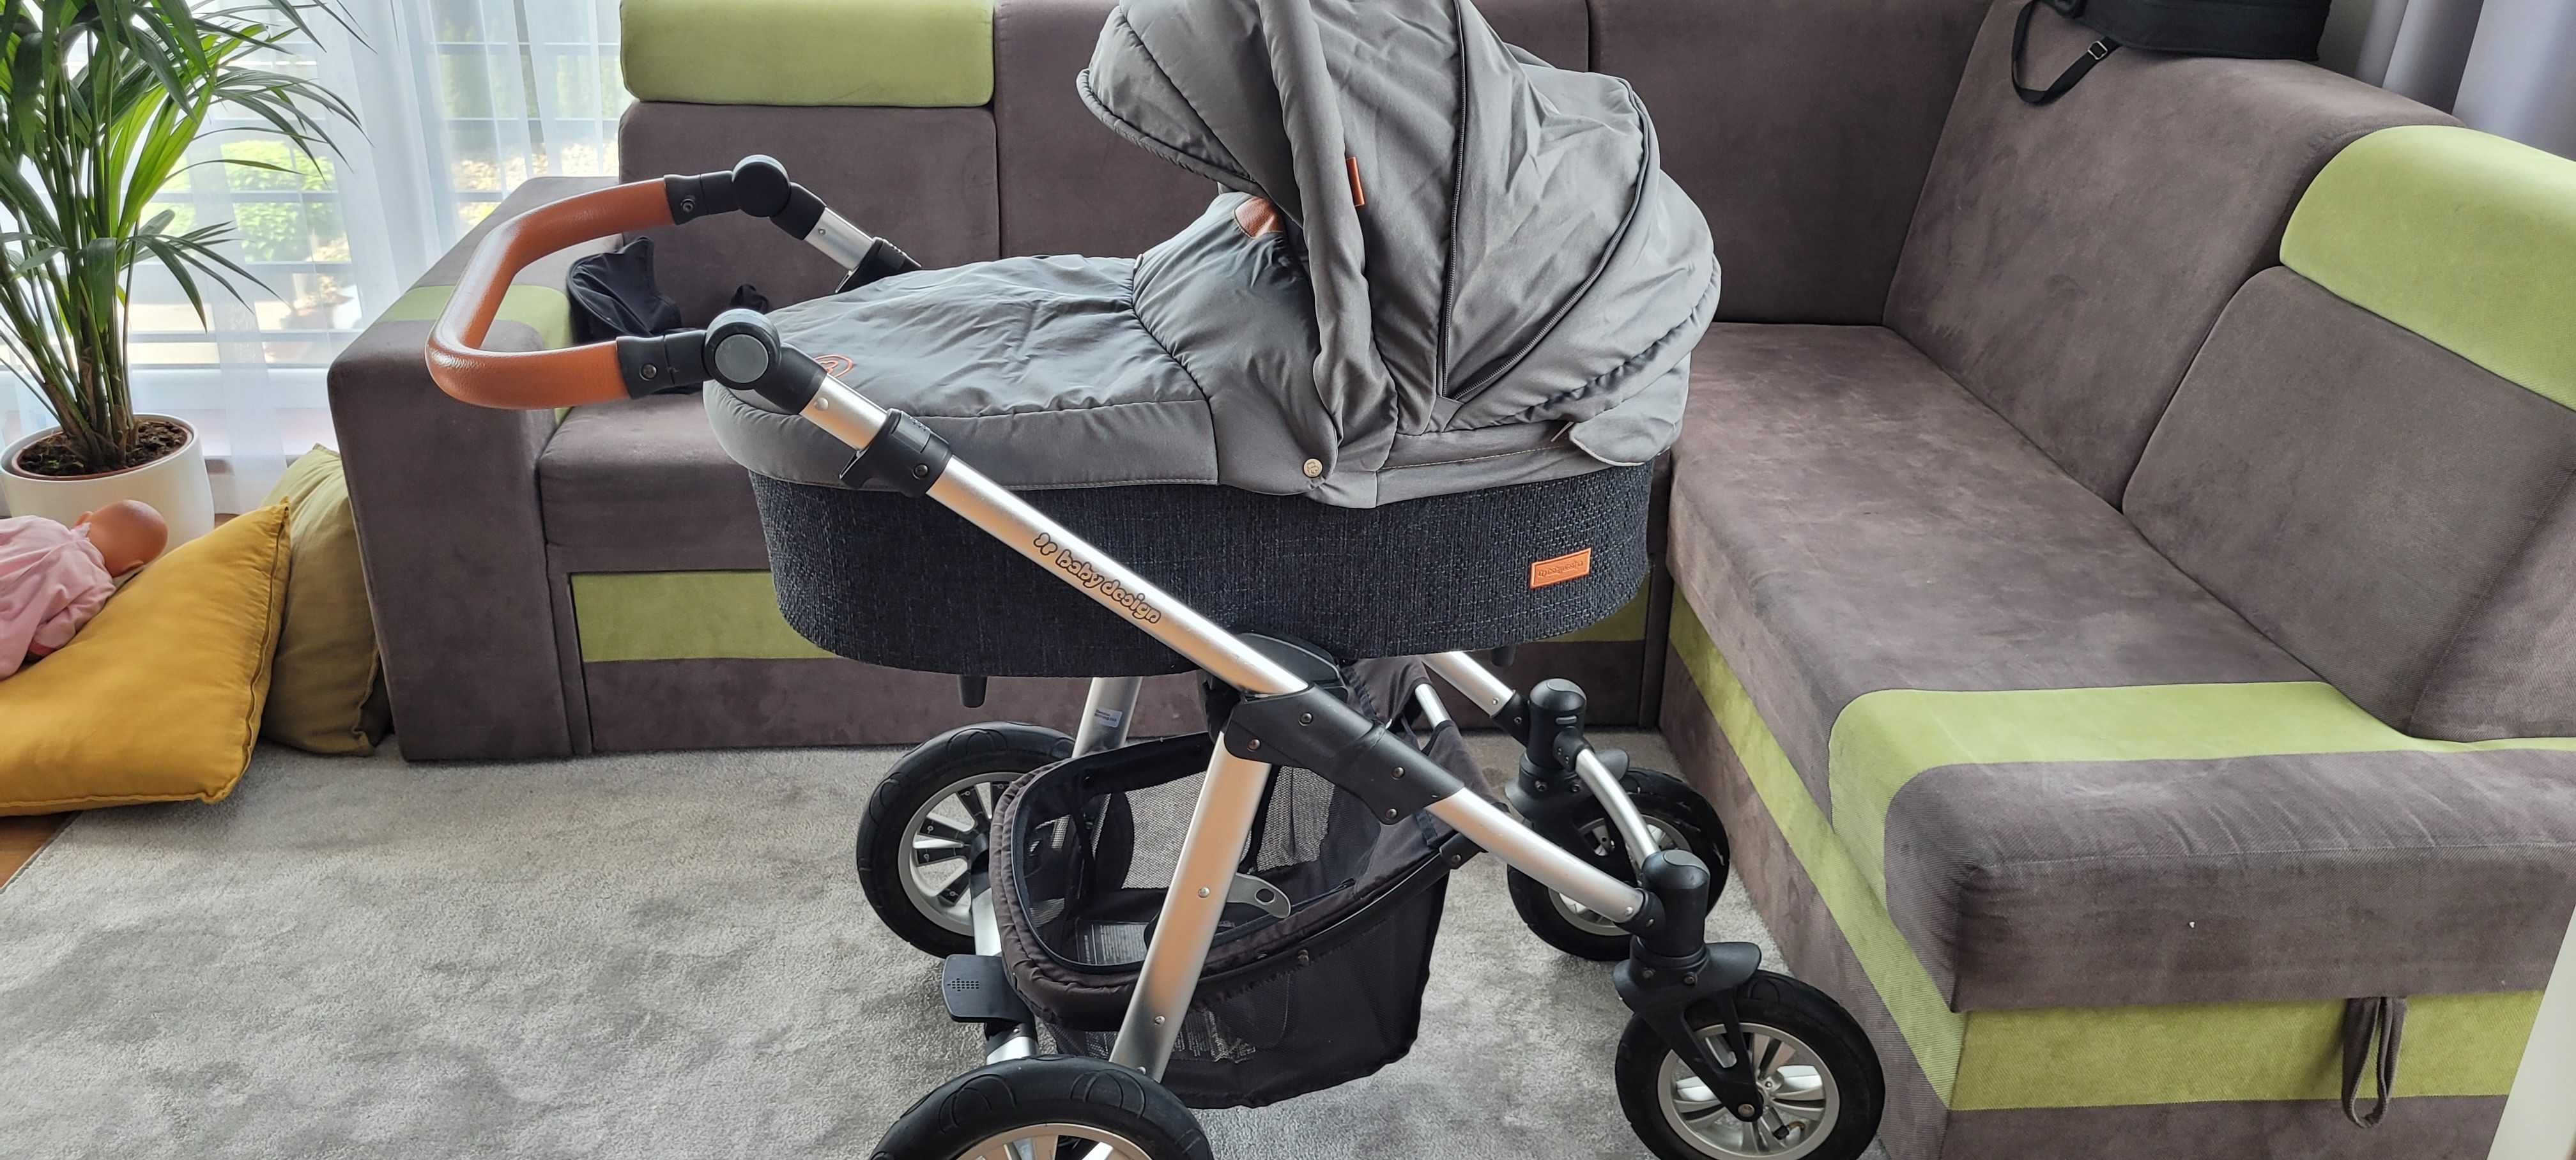 Wózek Baby Design Dotty 3 w 1, Nosidełko Maxi-Cosi